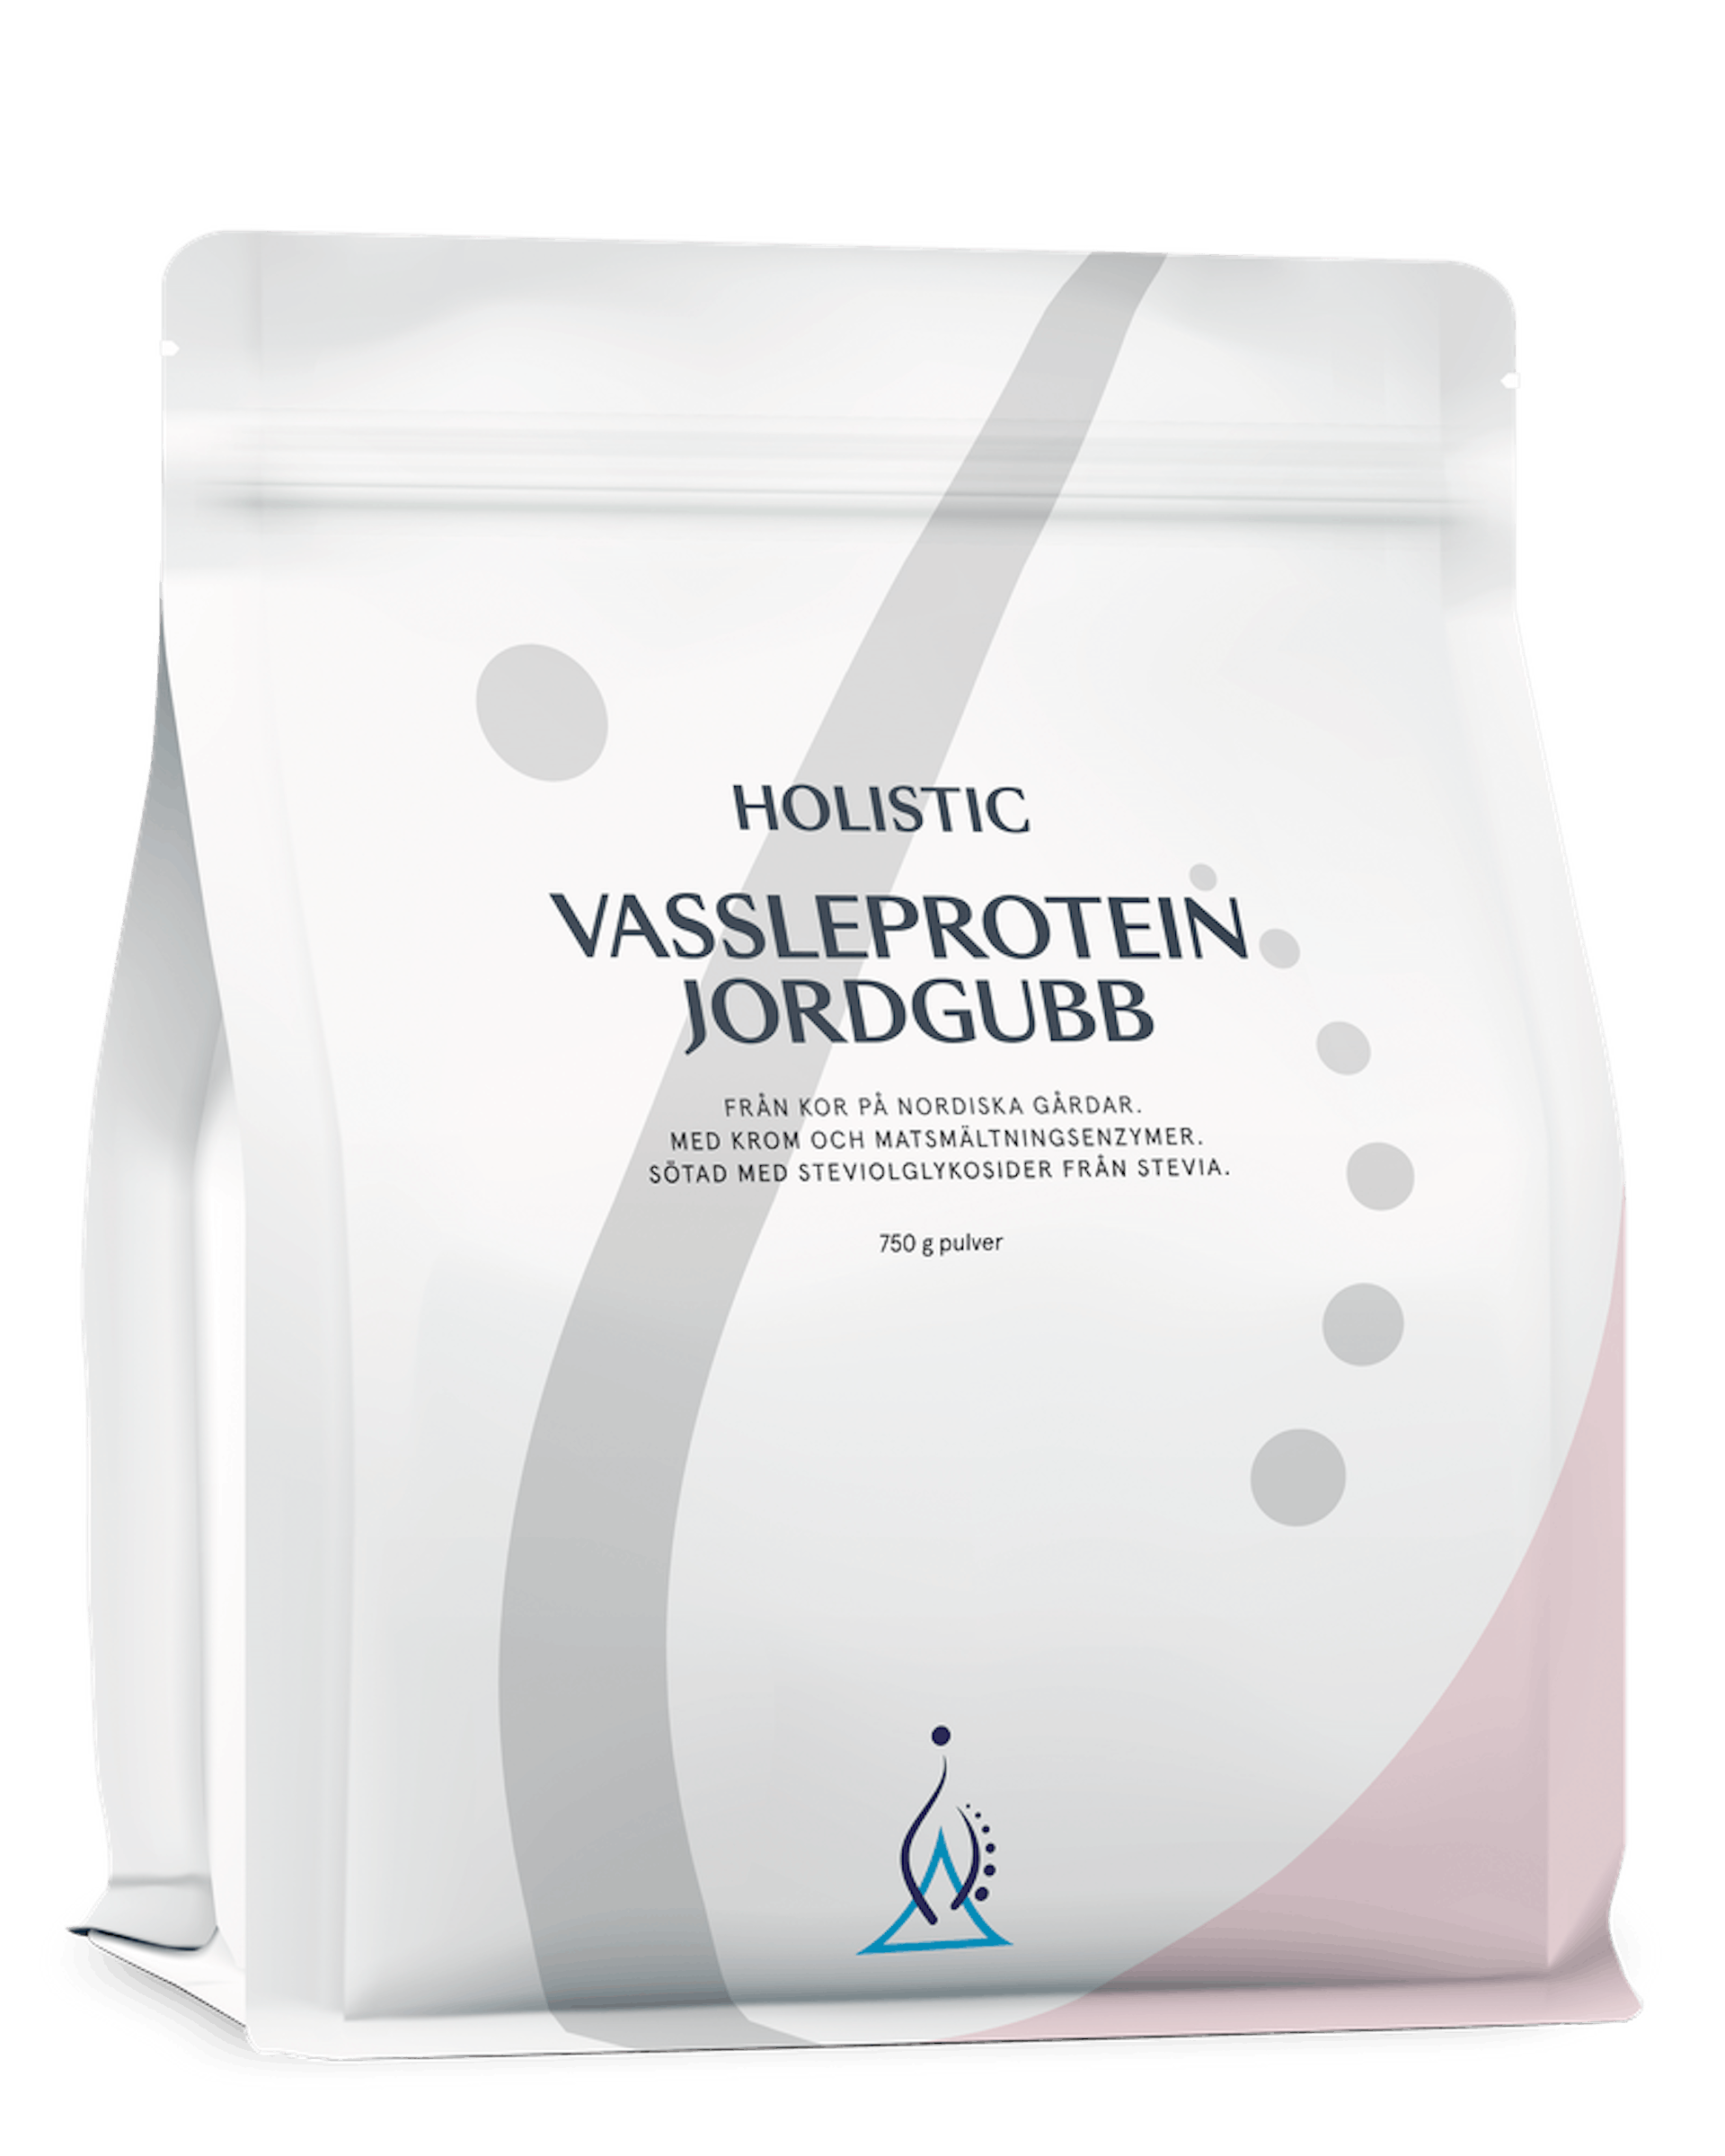 Vassleprotein jordgubb, 750 g (1 av 1)